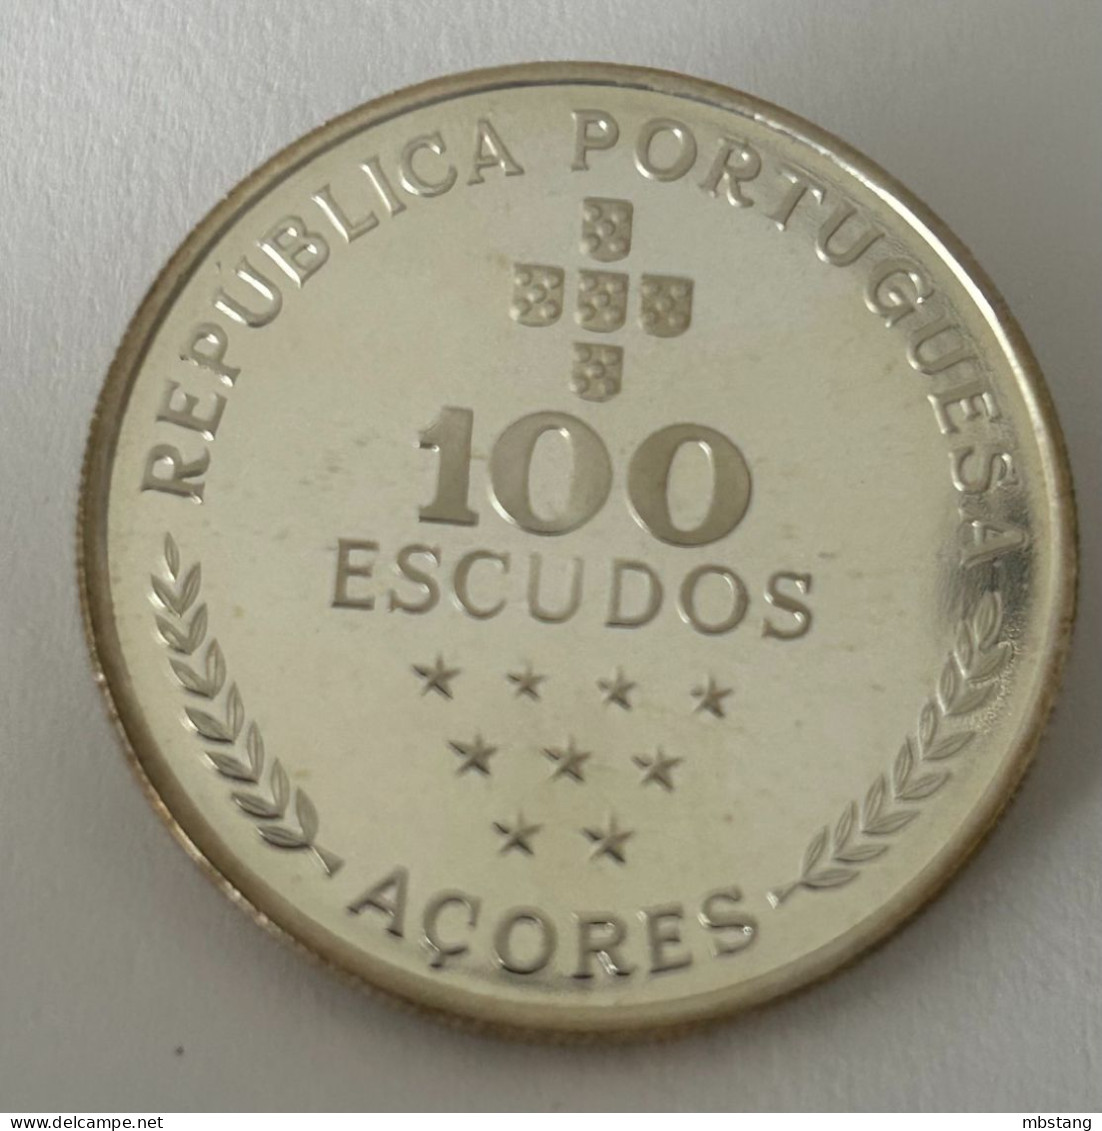 AZORES 100 Escudos (Azores Regional Autonomy; Silver) 1980 (.925) • 16.5 G •  34 Mm KM# 44a - Açores